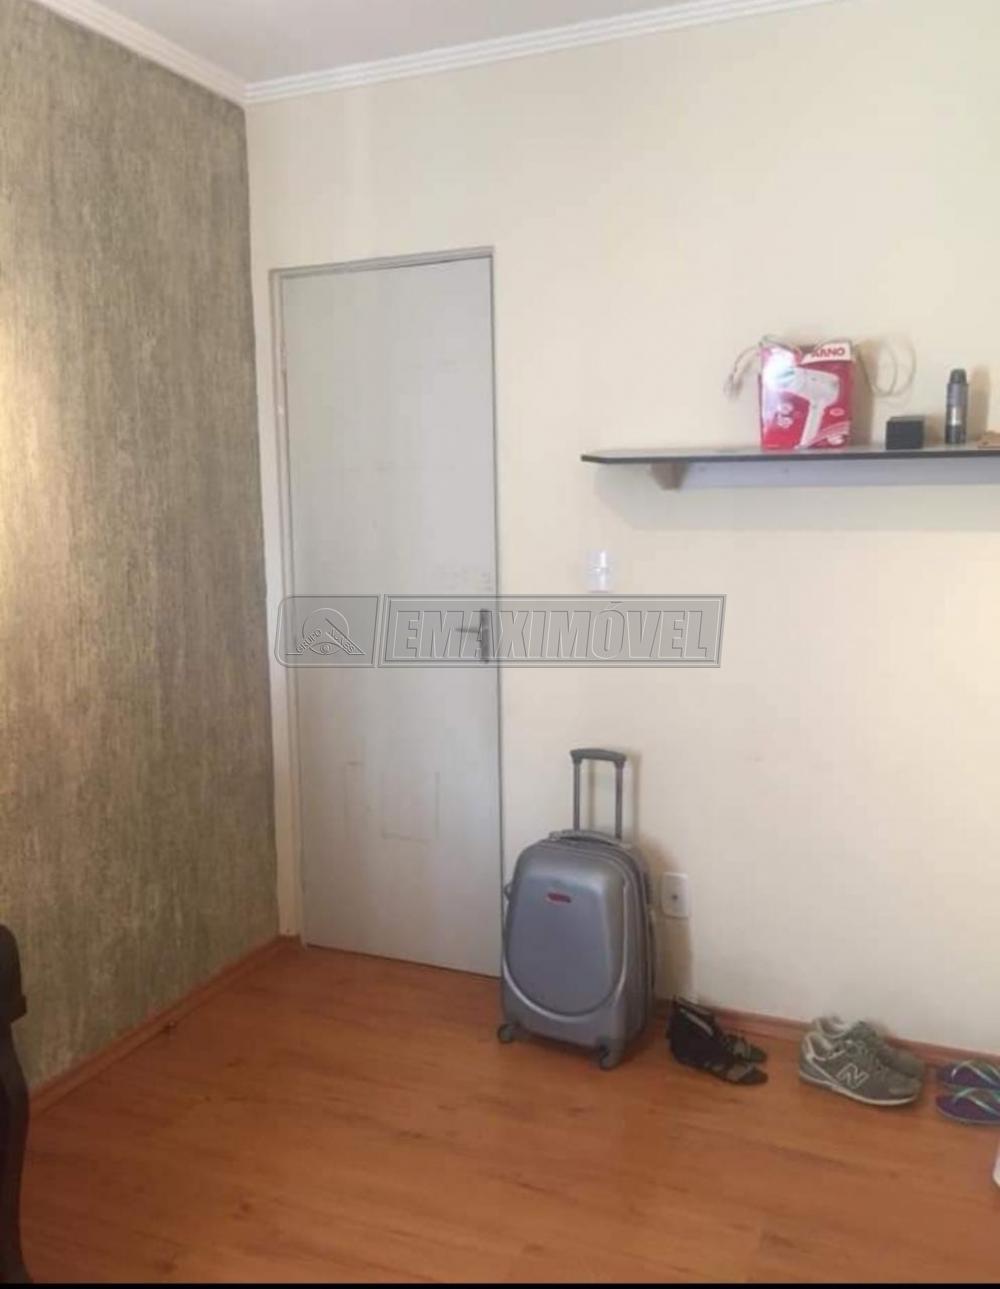 Alugar Apartamento / Padrão em Sorocaba R$ 1.000,00 - Foto 10